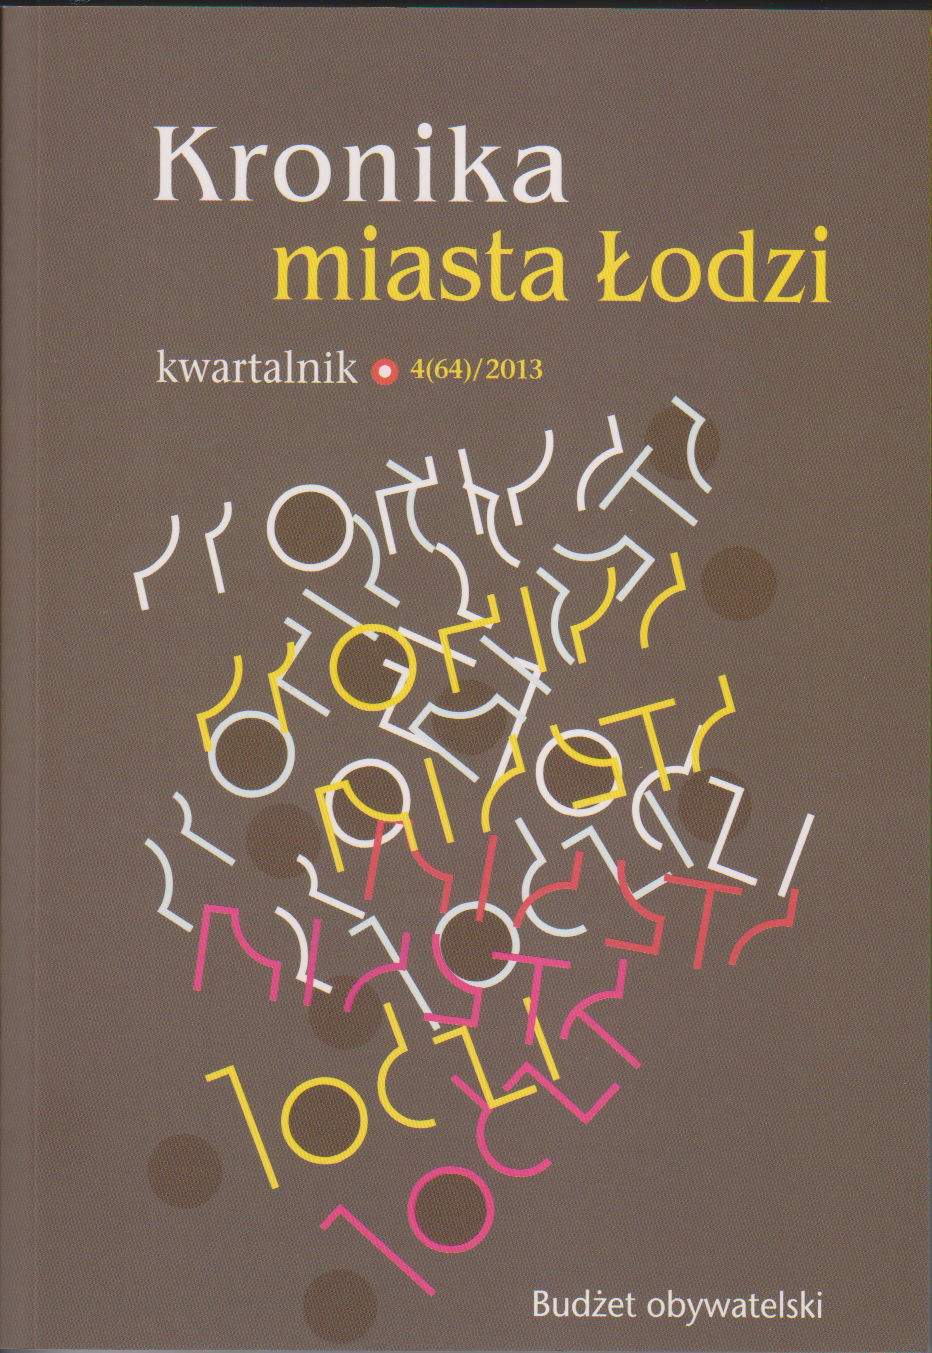 Kronika Miasta Łodzi nr 4/2013 